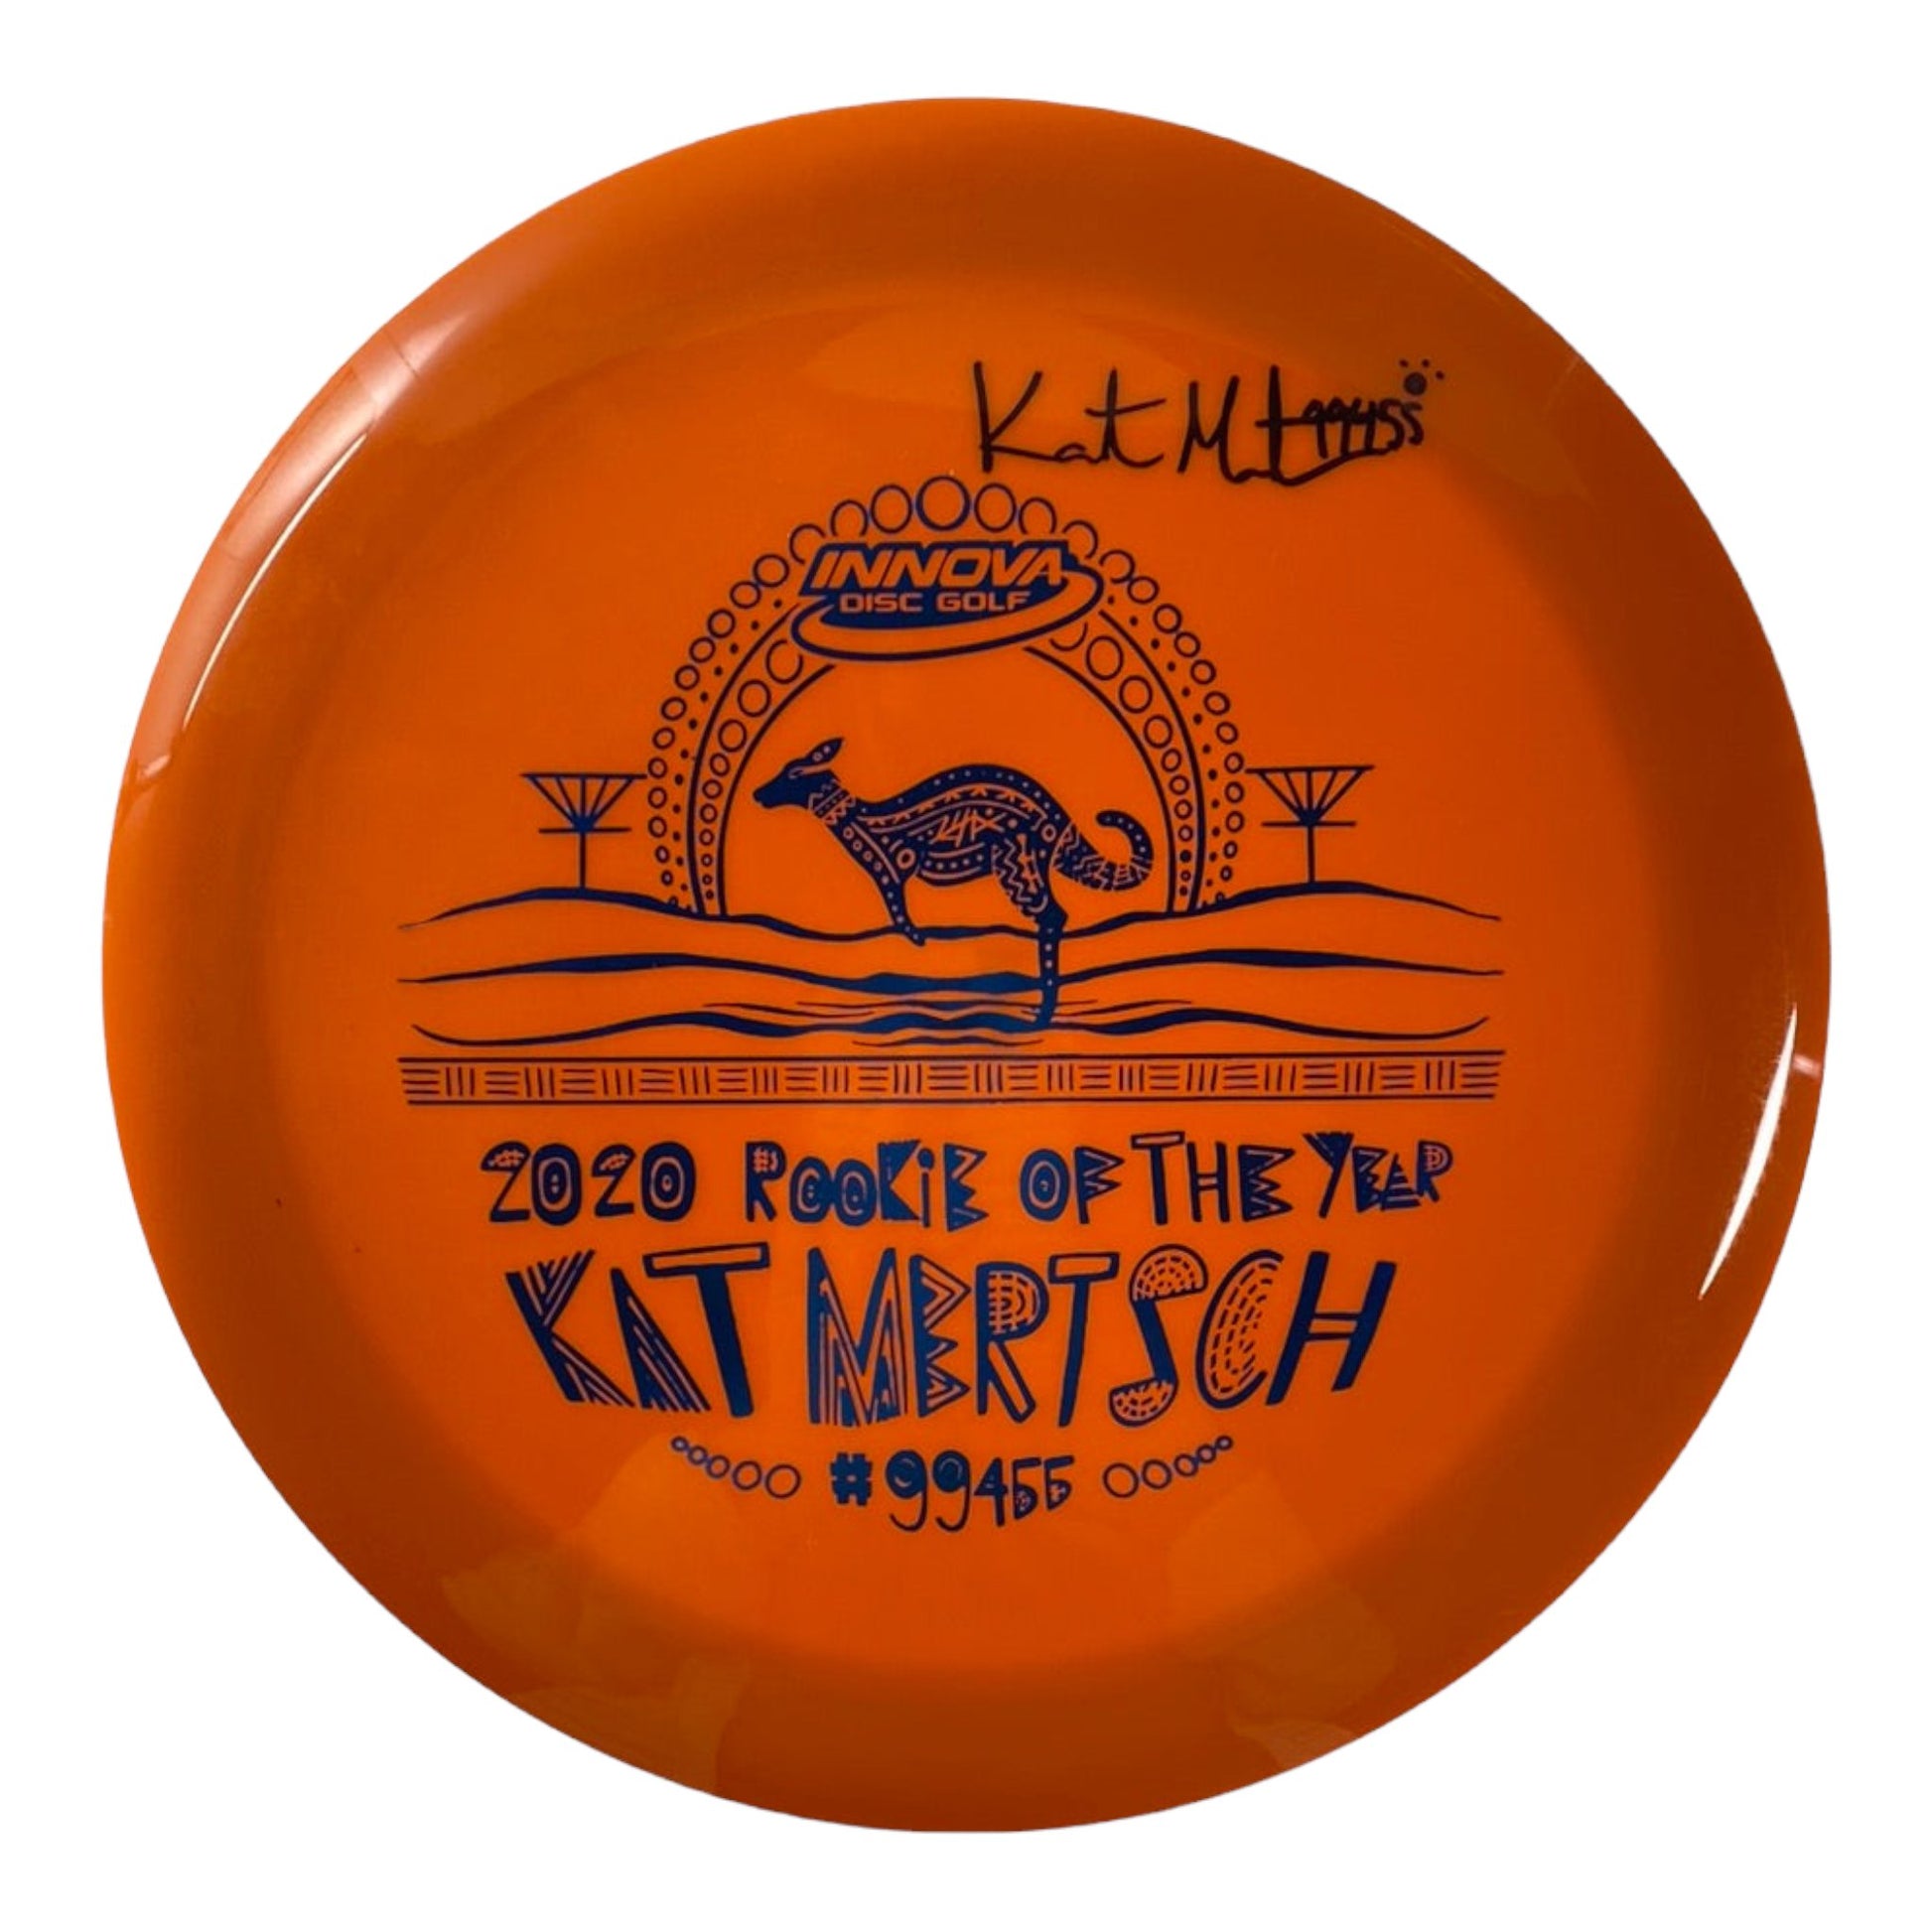 Innova Champion Discs Destroyer | Star | Orange/Blue 175g (Kat Mertsch) Disc Golf